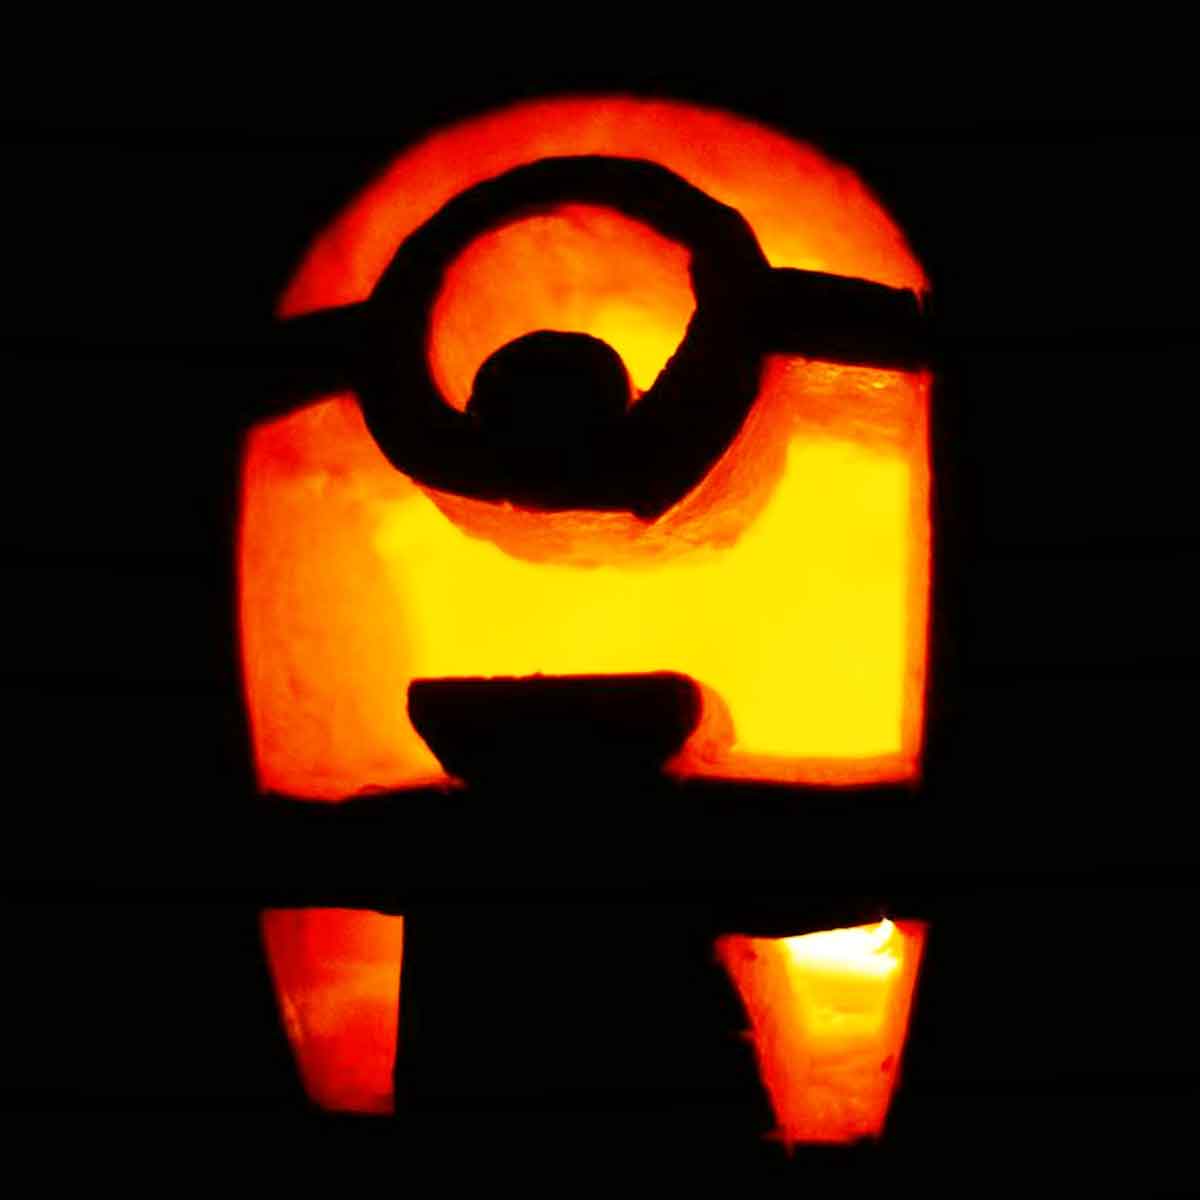 easy minion pumpkin carving